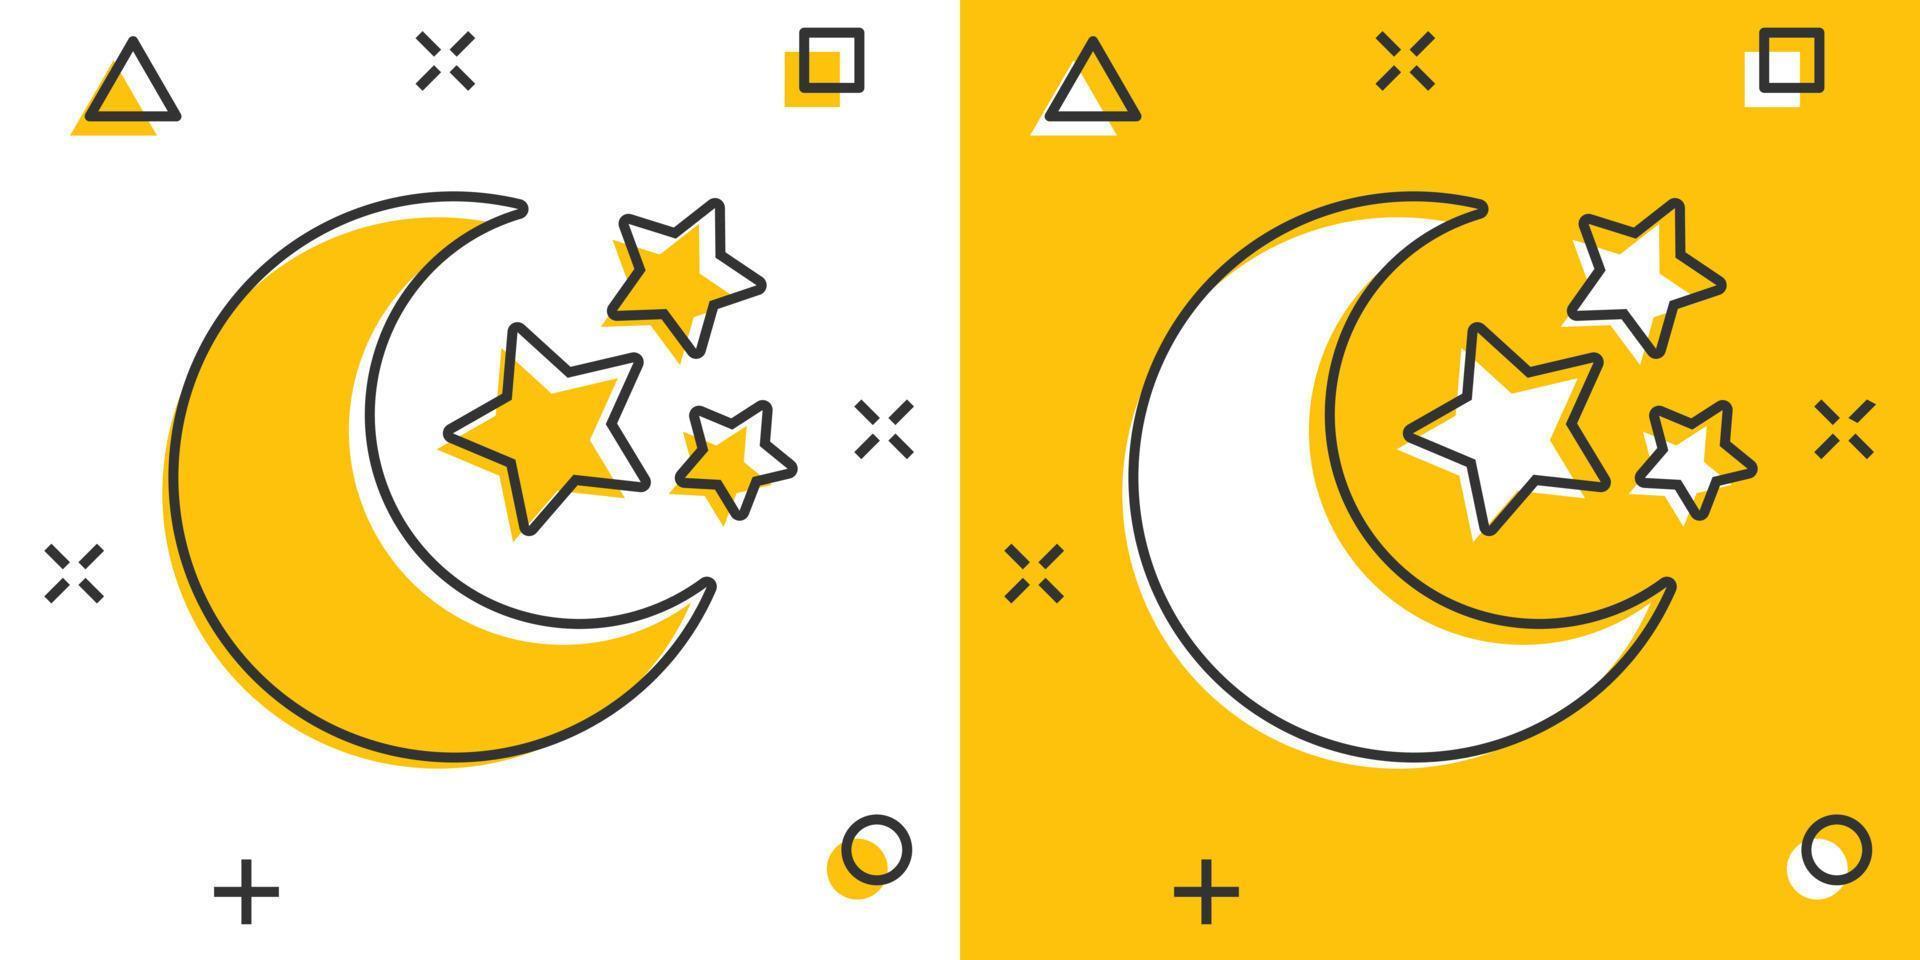 vettore cartone animato ore notturne Luna e stelle icona nel comico stile. lunare notte concetto illustrazione pittogramma. Luna attività commerciale spruzzo effetto concetto.